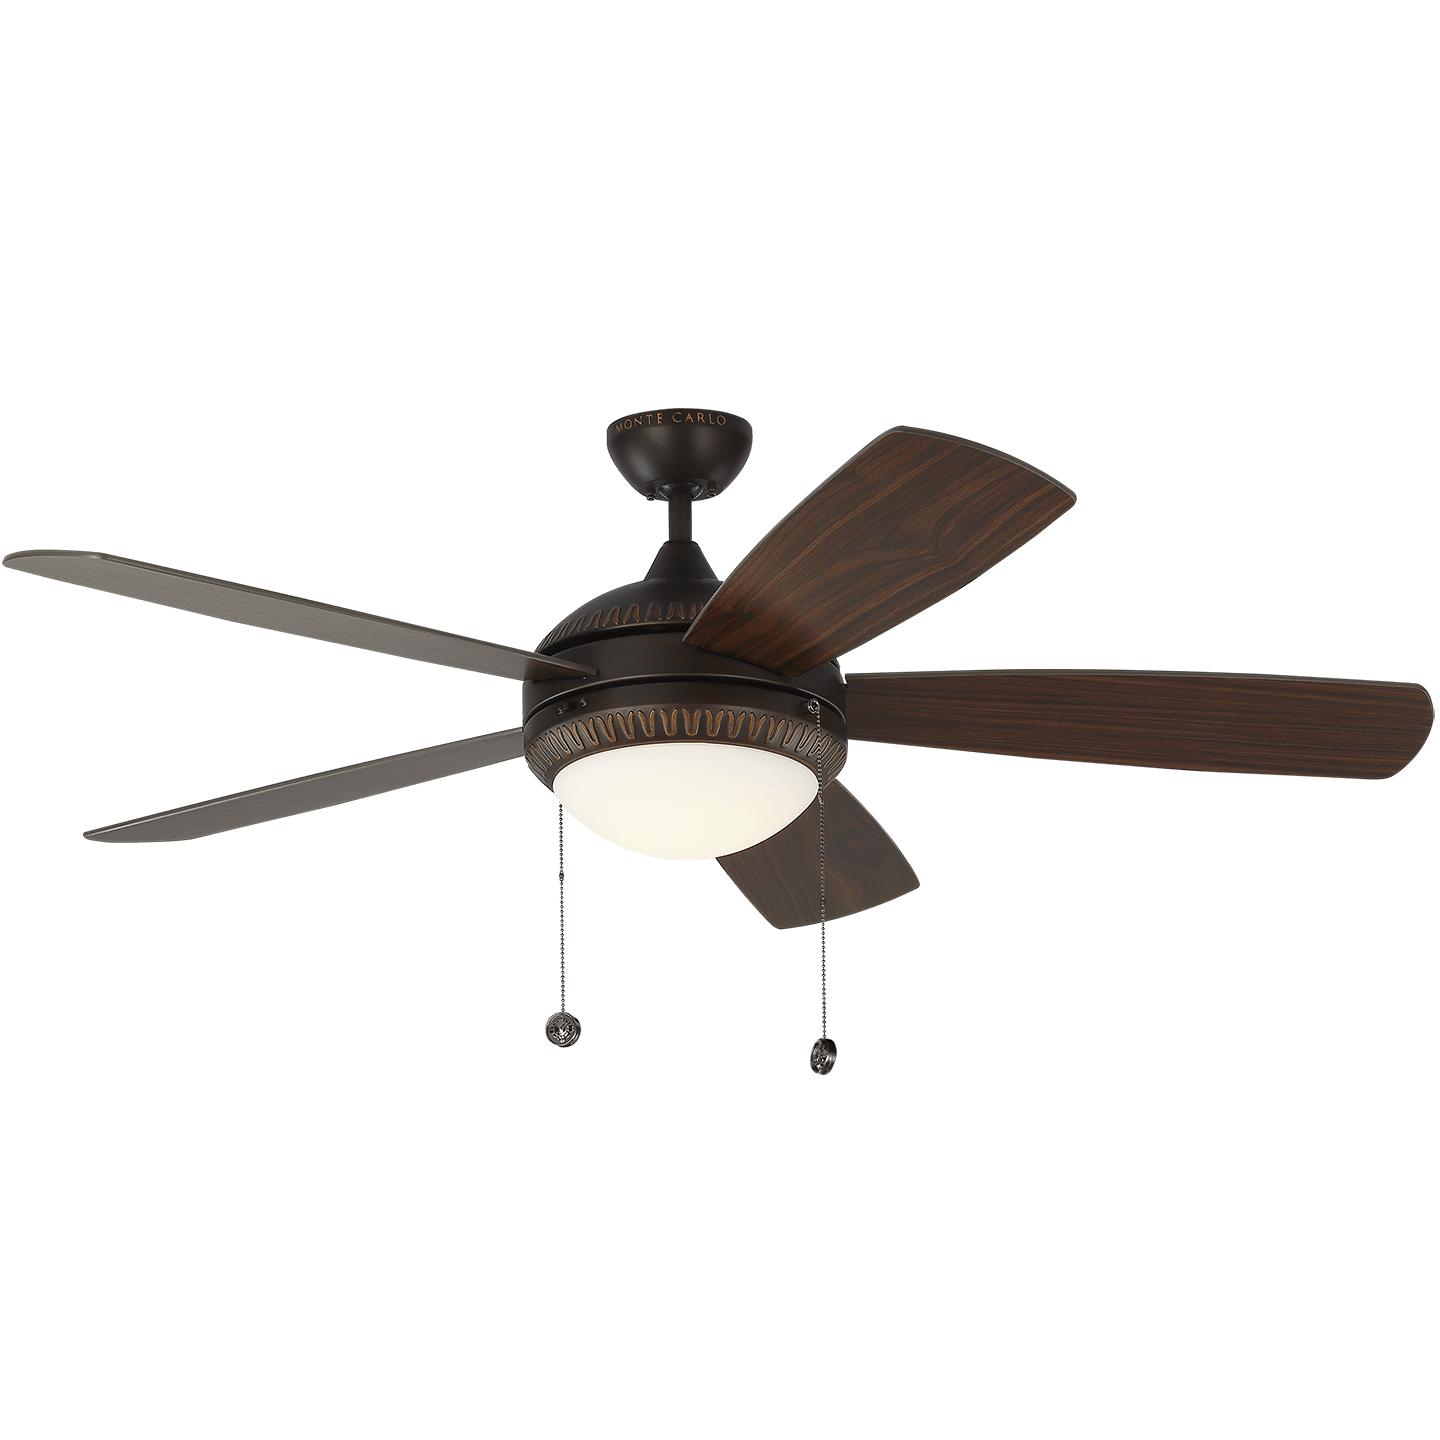 Купить Потолочный вентилятор Discus Ornate 52" LED Ceiling Fan в интернет-магазине roooms.ru